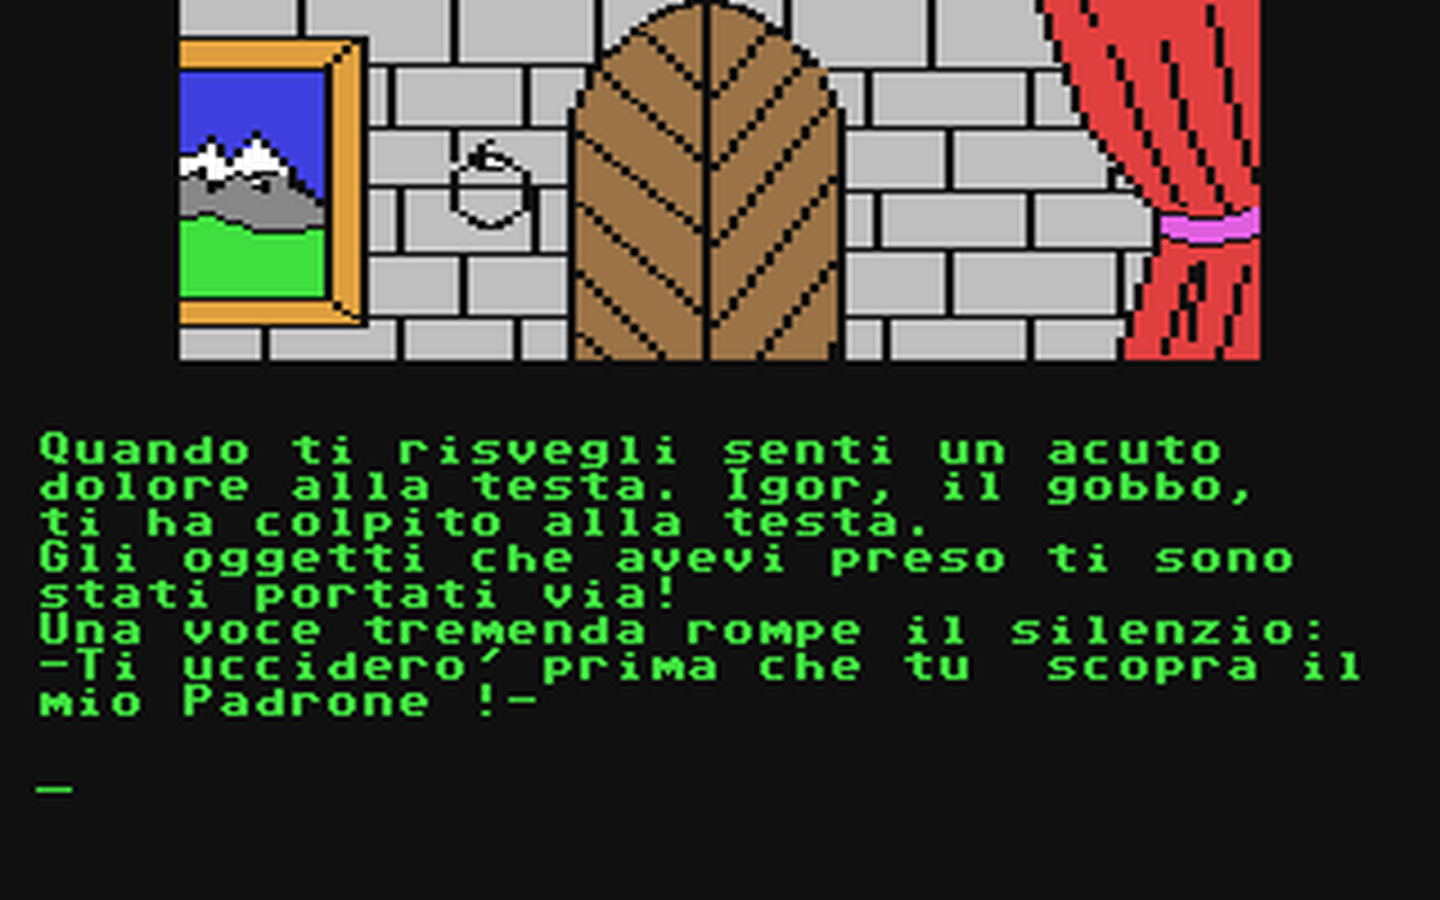 C64 GameBase Avventure_di_Jack_Byteson,_Le_-_Duello_con_Dracula Edizioni_Hobby_s.r.l./Epic_3000 1986